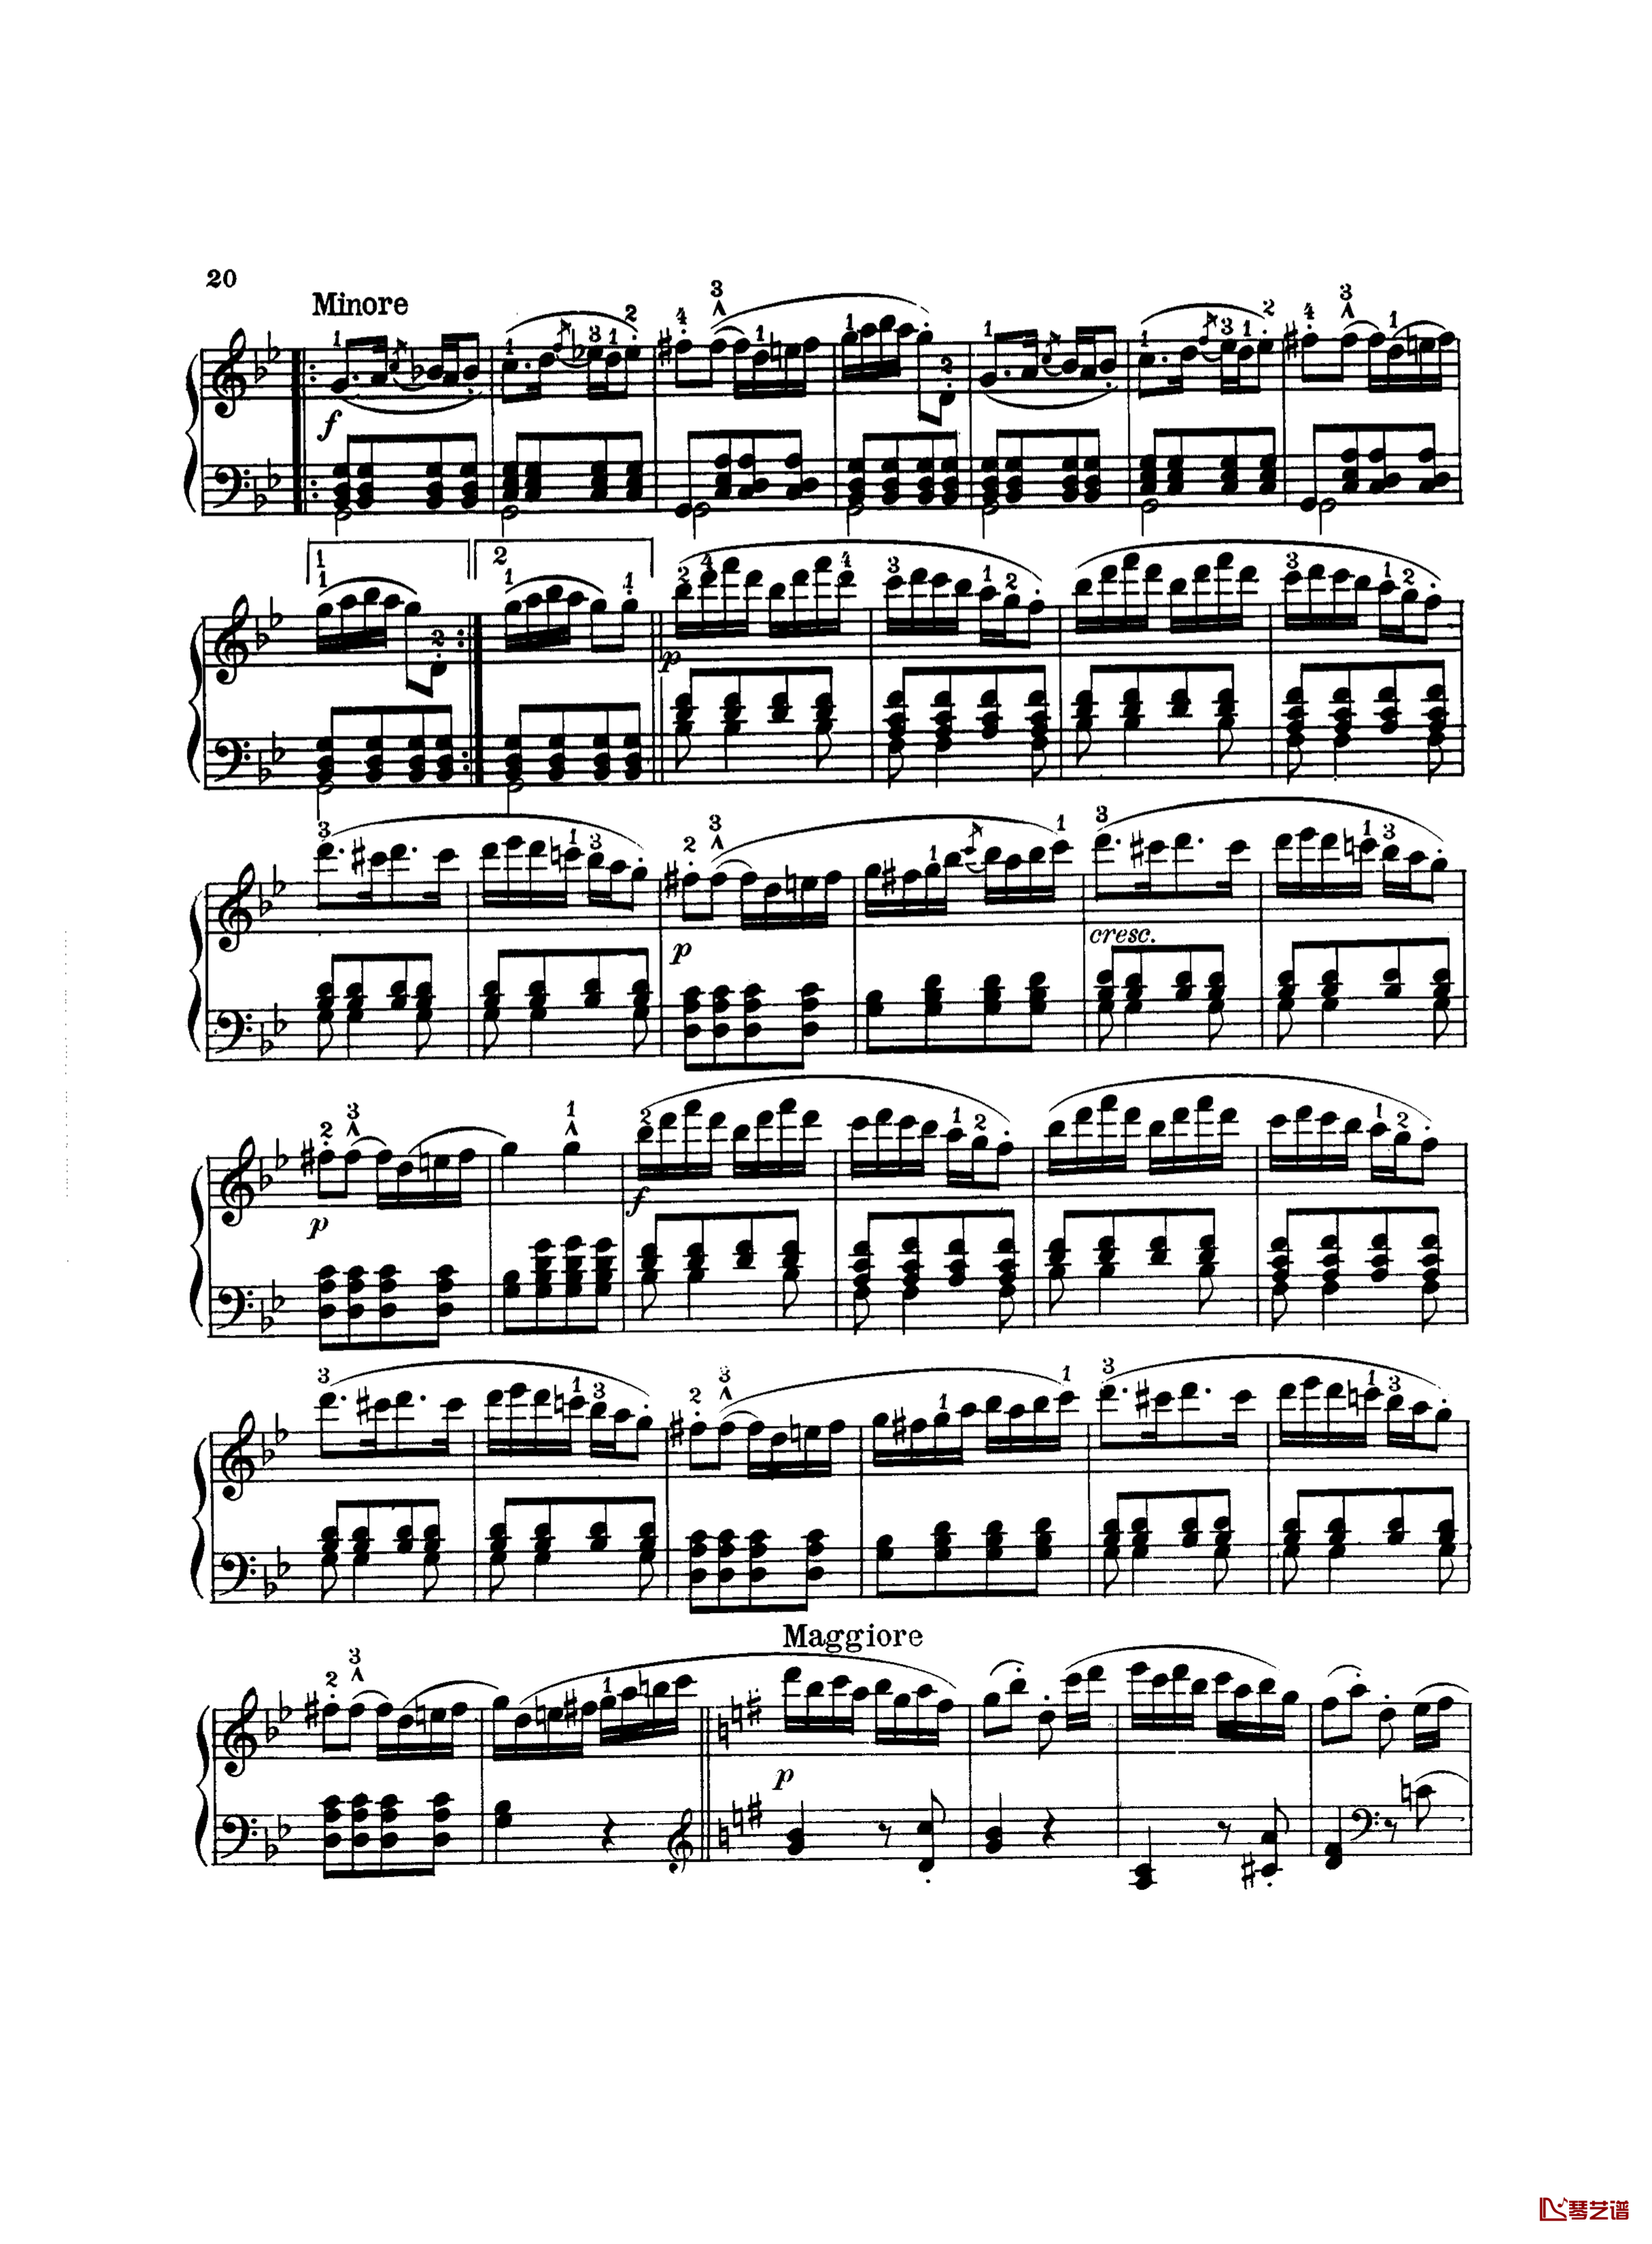 吉普赛回旋曲钢琴谱-带指法版-海顿5